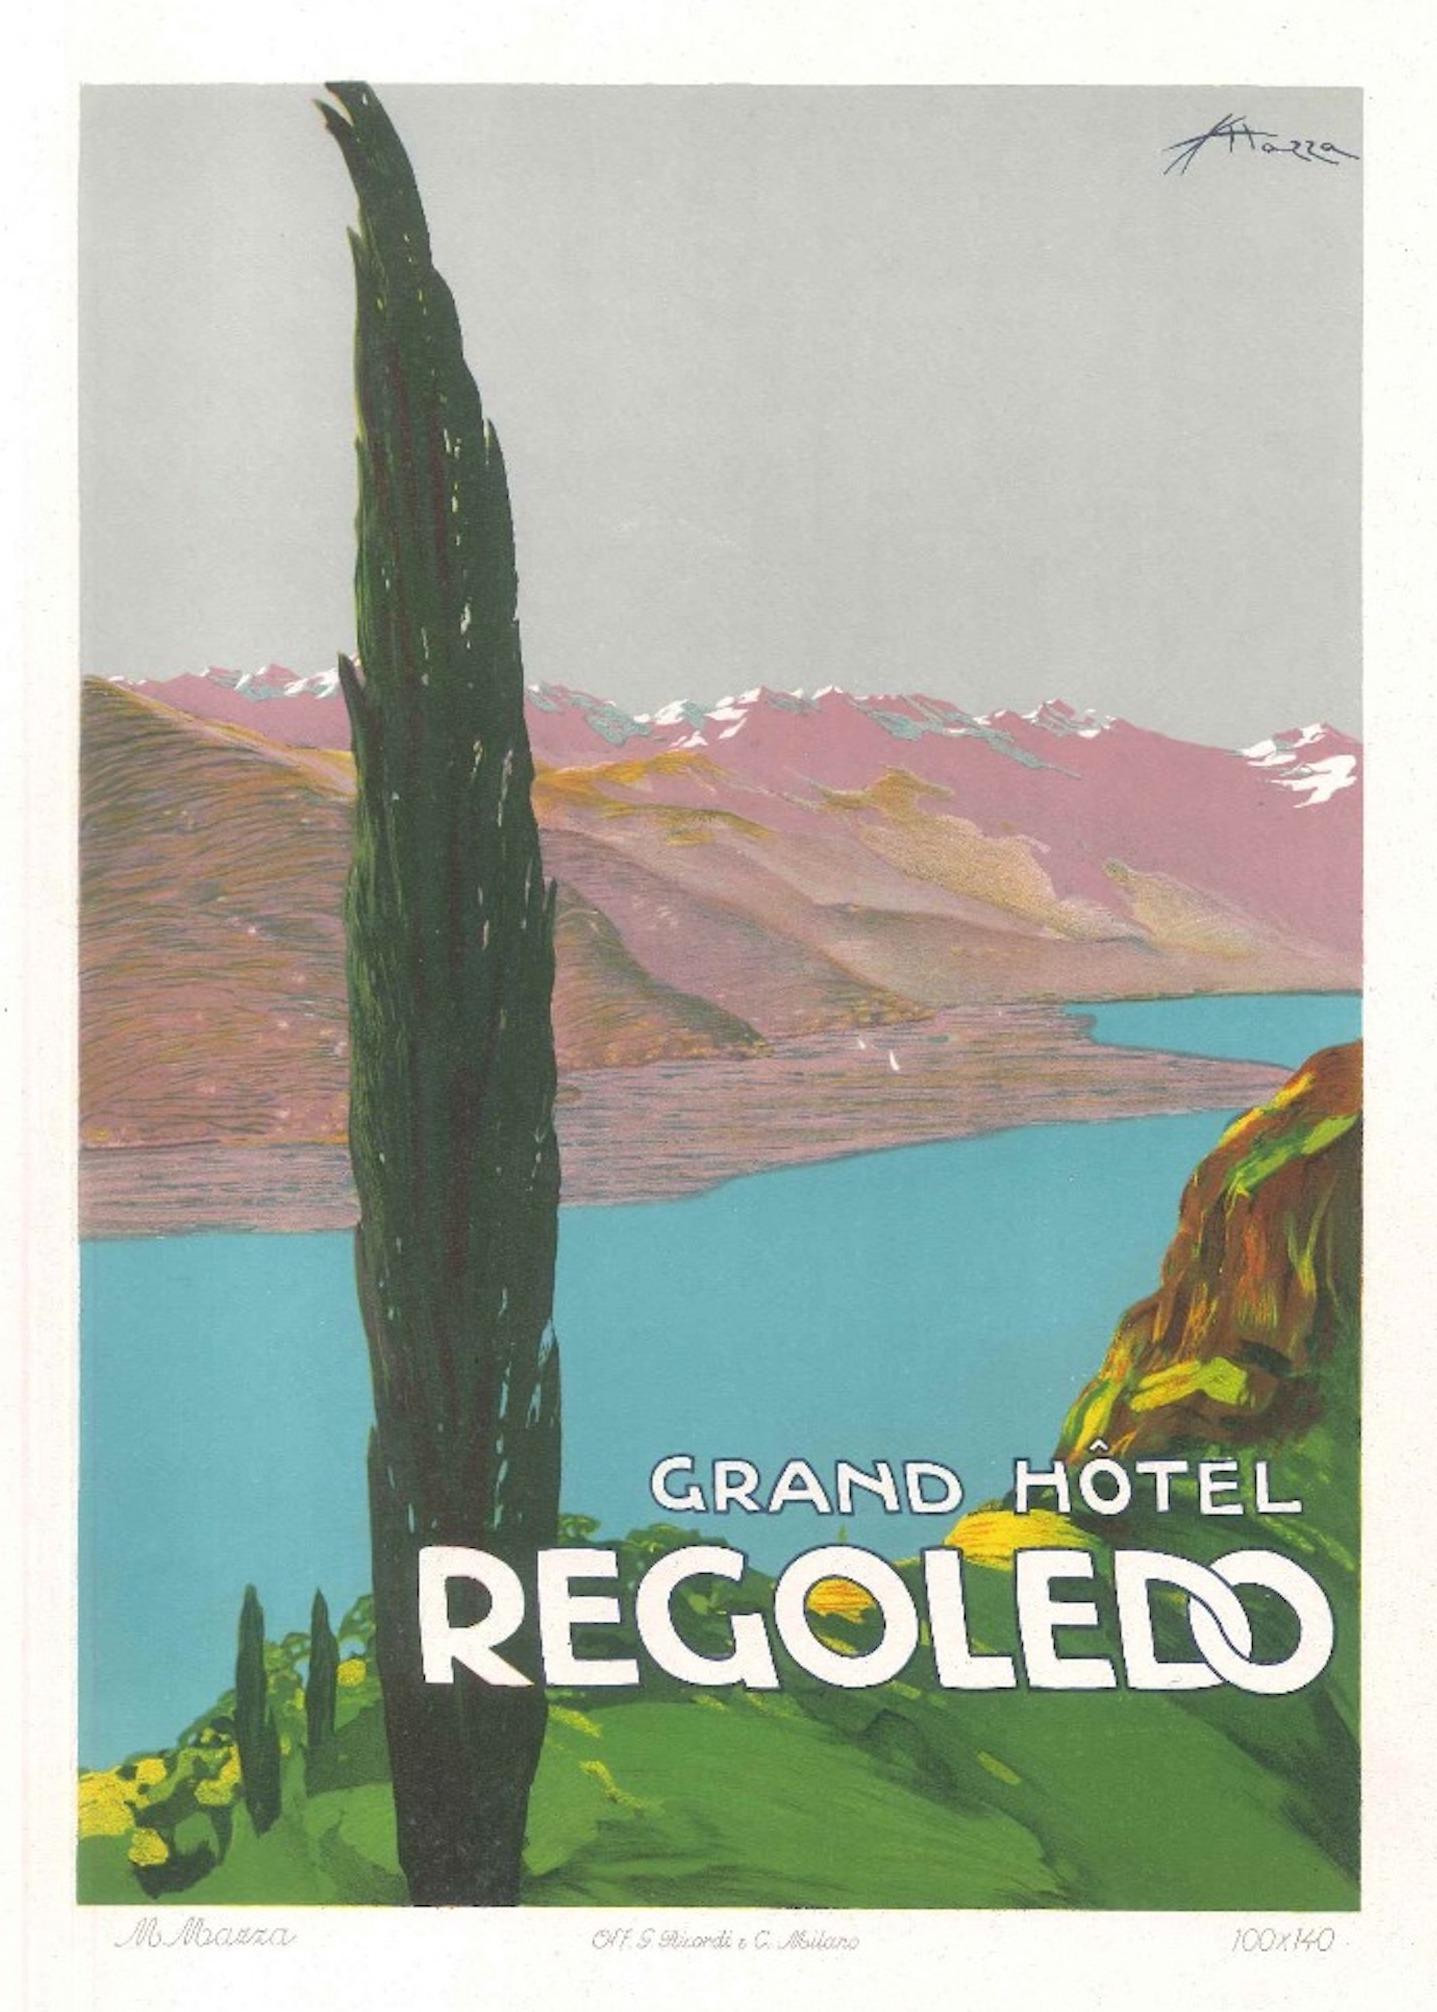 Enrico Sacchetti Figurative Print - Grand Hotel Rogoledo - Original Advertising Lithograph by E. Sacchetti -1914 ca.